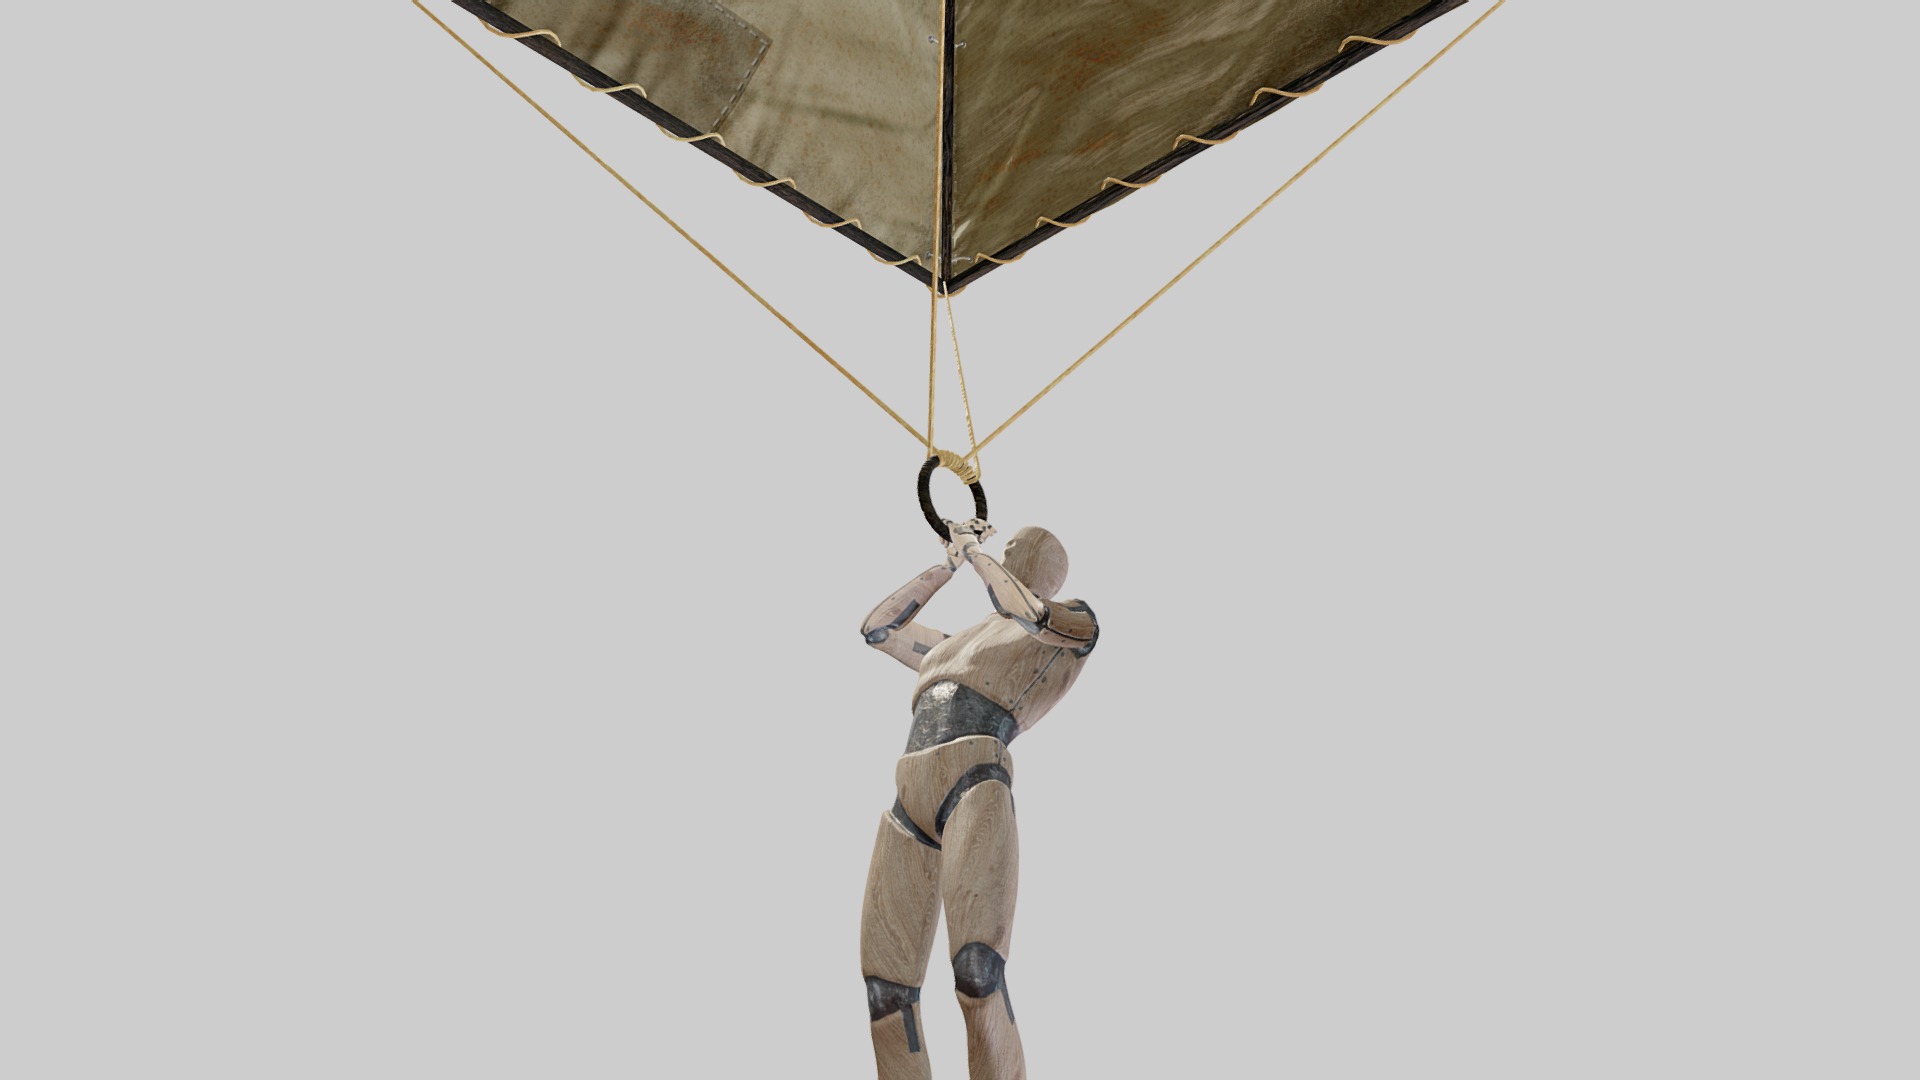 3D model Leonardo da Vinci – Paracadute - This is a 3D model of the Leonardo da Vinci - Paracadute. The 3D model is about a person holding a parachute.